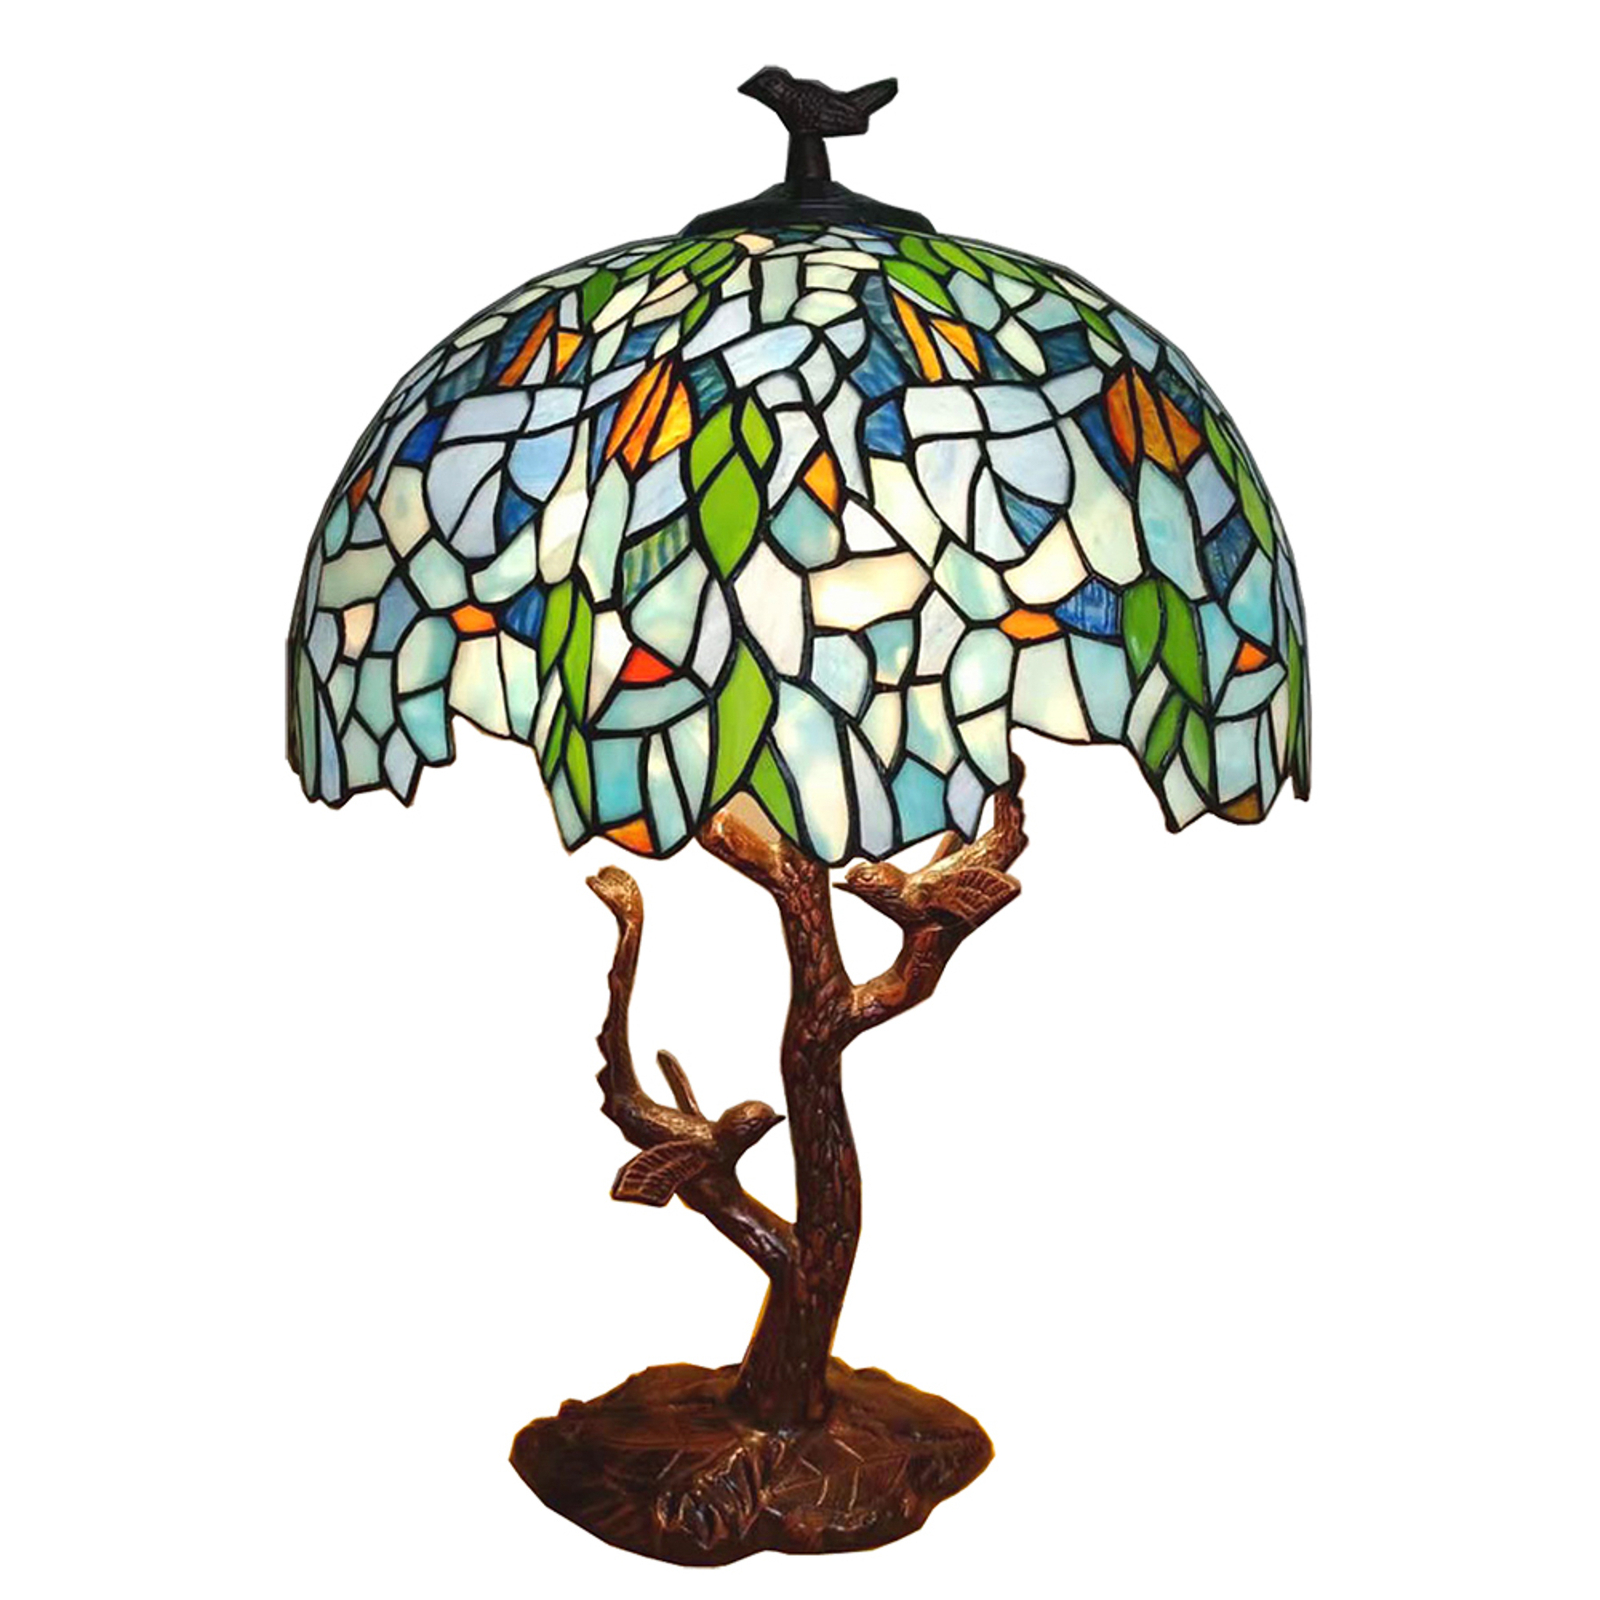 Tafellamp 5LL-6115 in Tiffany stijl